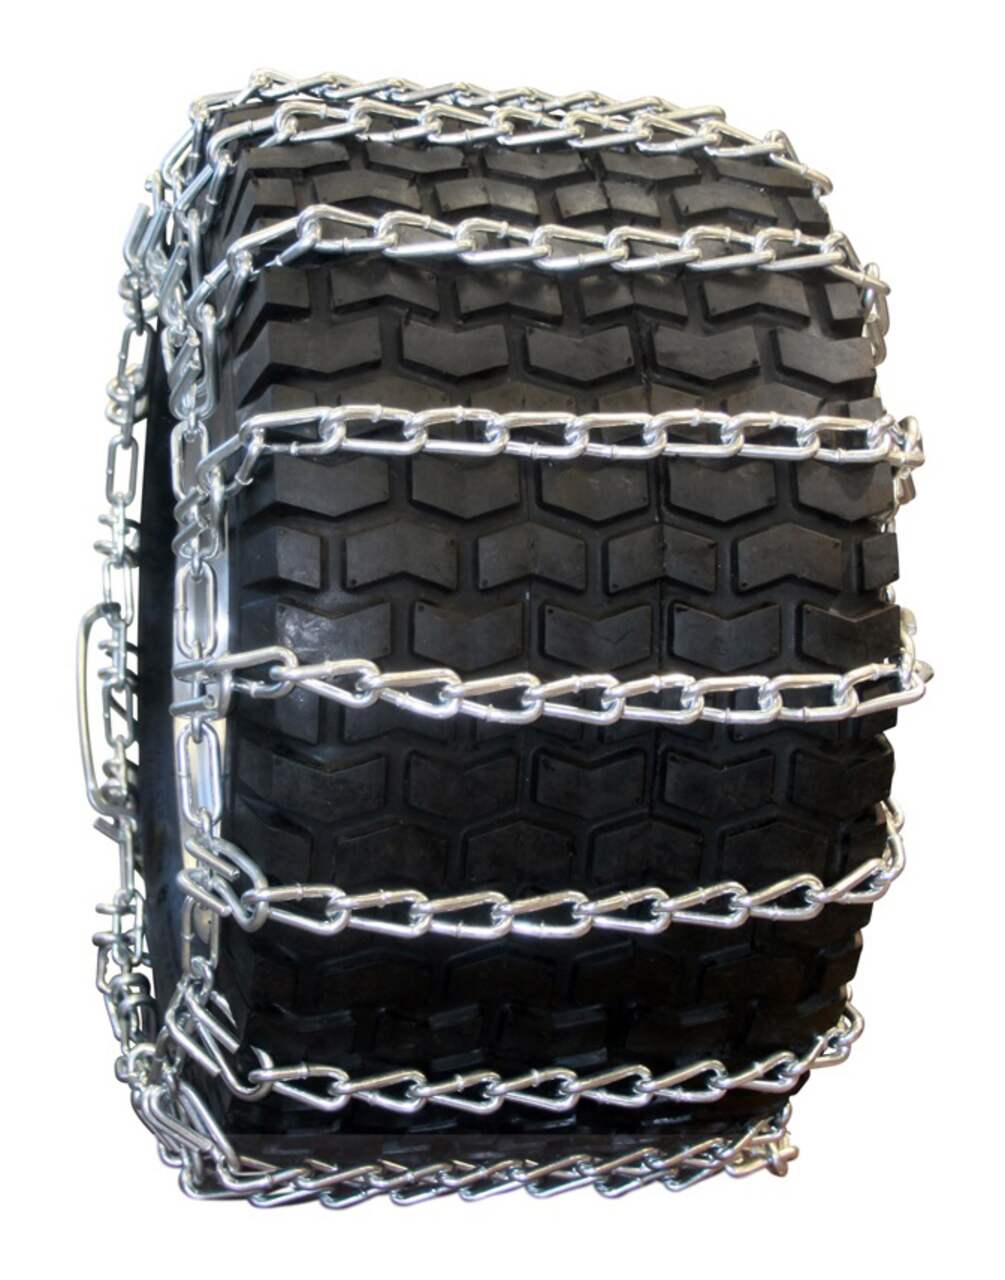 Chaînes à pneus pour souffleuse à neige universelle Certified, 16 x 6,5/8  po, paq. 2, adhérence accrue